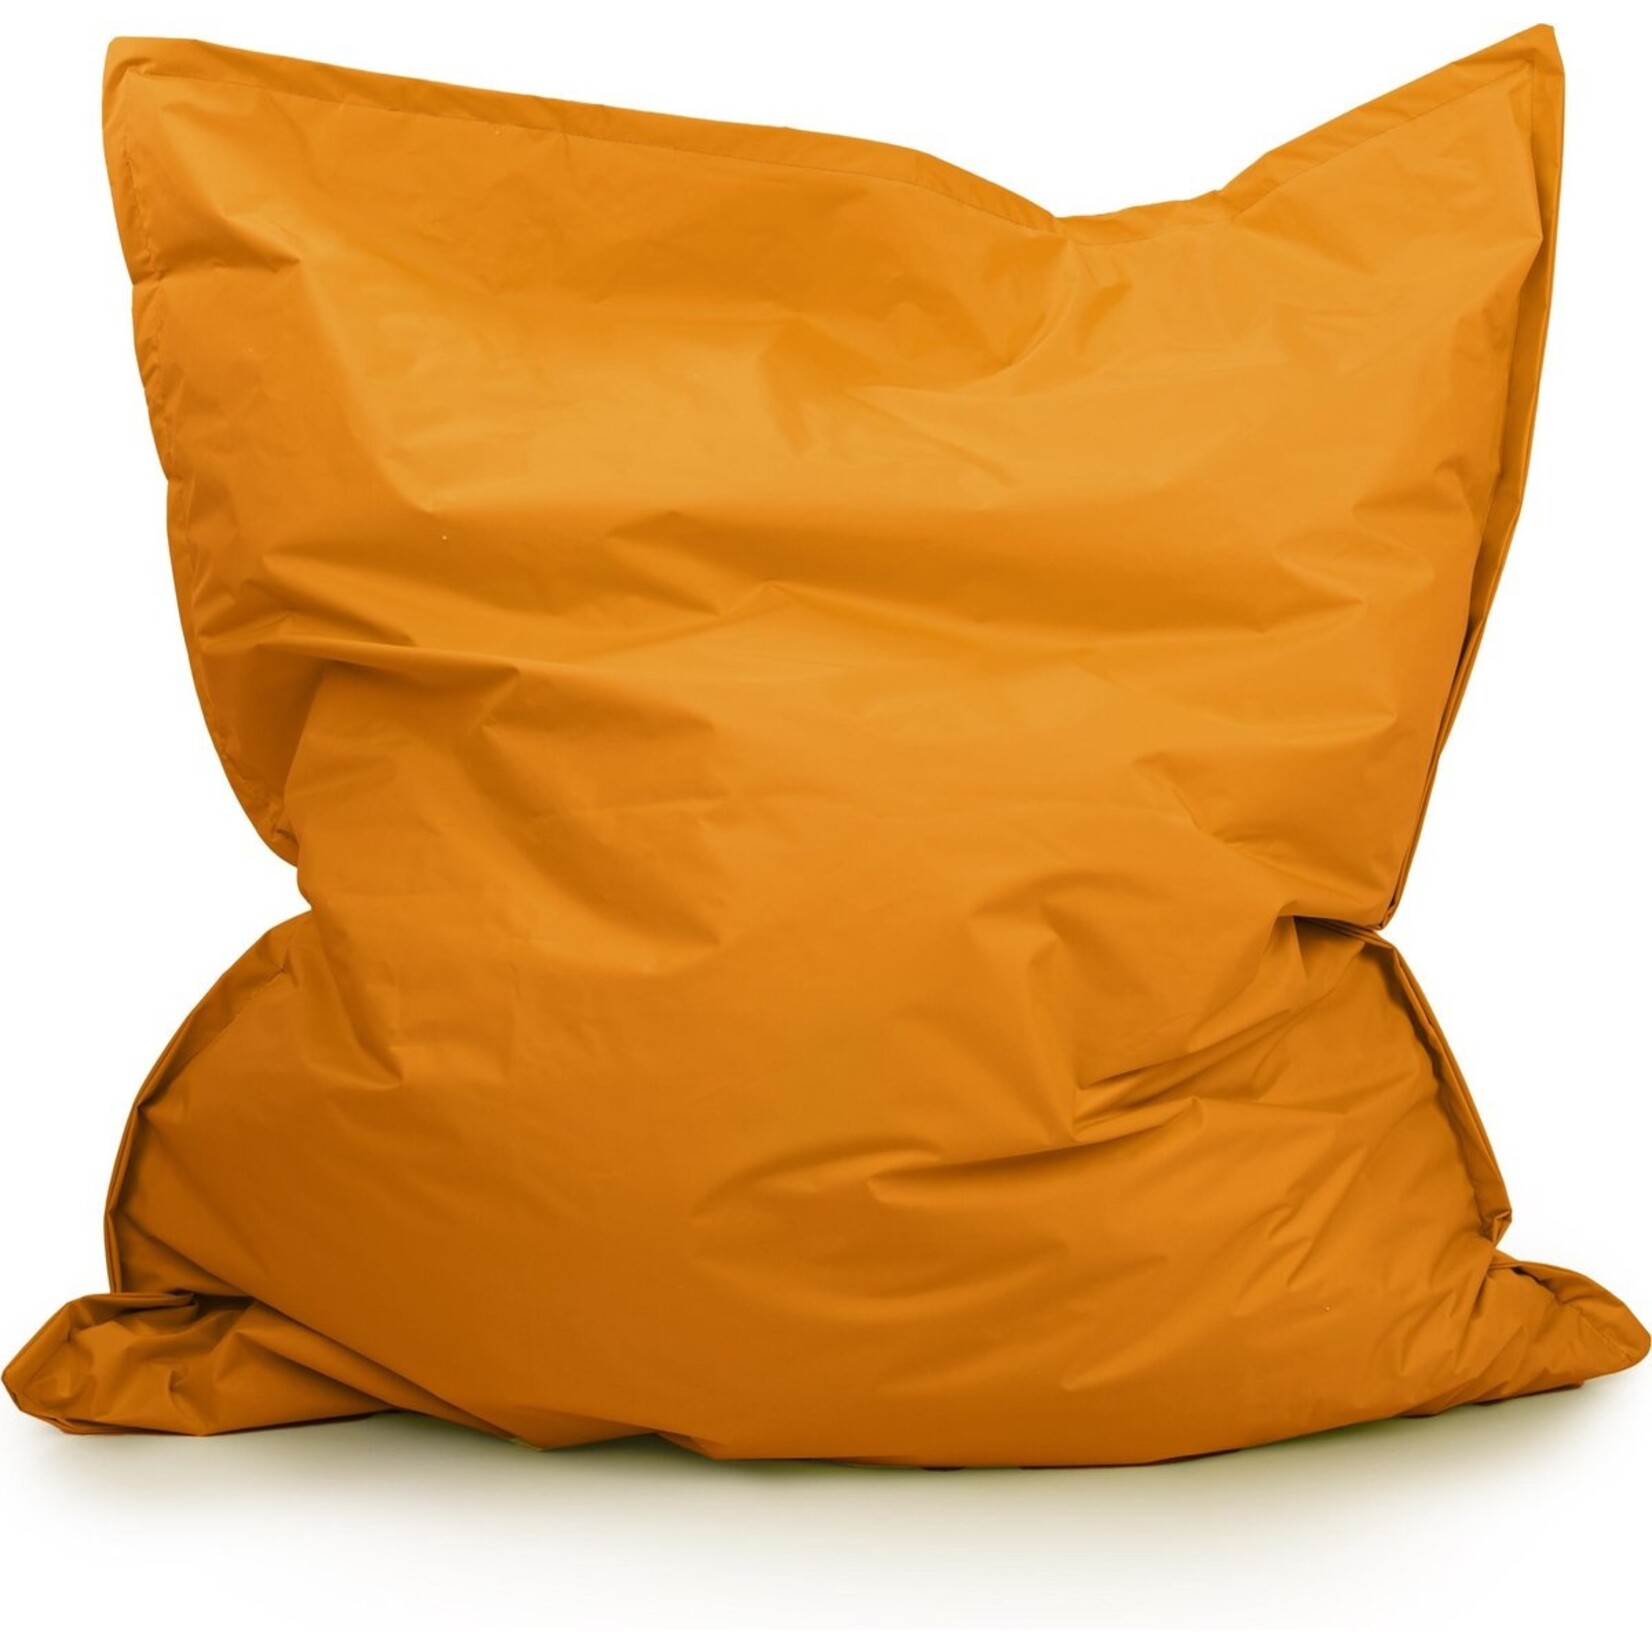 Drop & sit zitzak - Nylon - Zitzakfauteuil - Woonkamerzitzak - Oranje - 130 x 150 cm - binnen en buiten